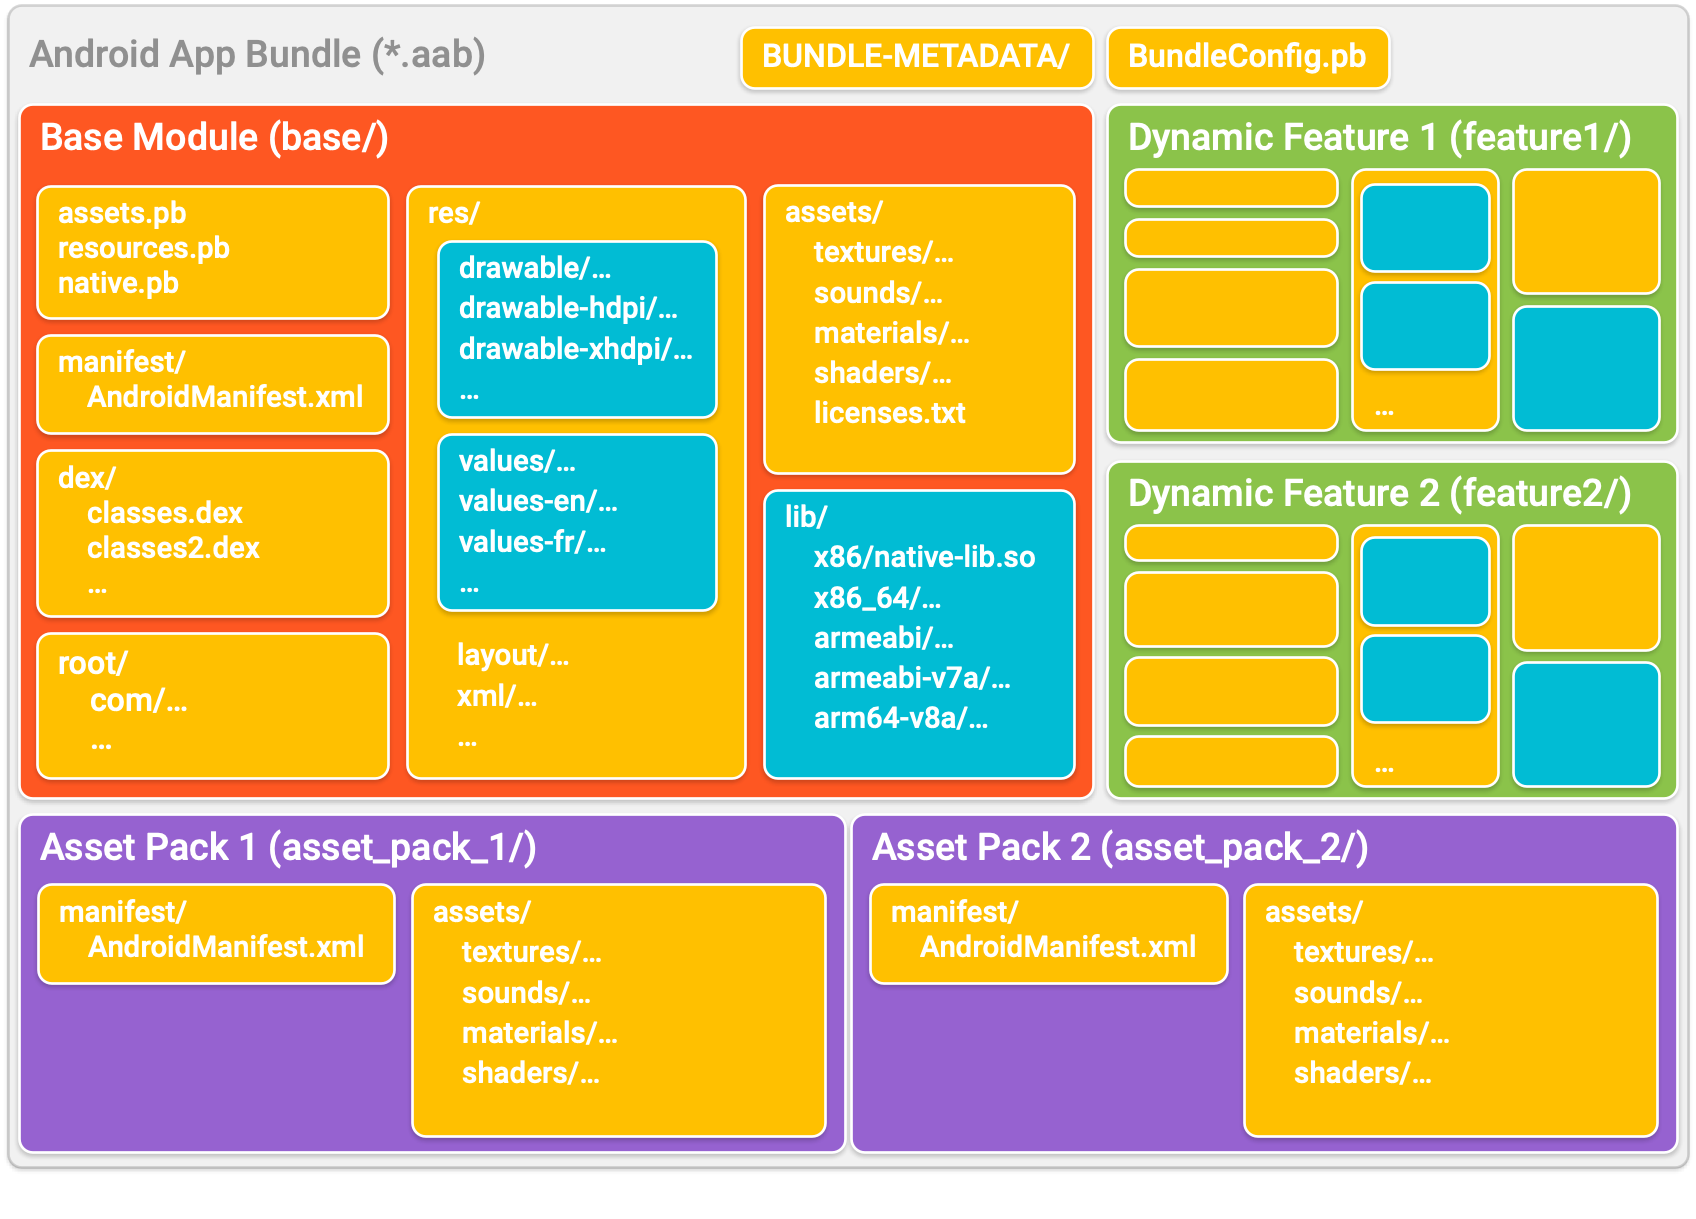 Mit App Bundles wird Ihre App in Verzeichnissen organisiert, die jeweils ein Modul darstellen. In jedem Modulverzeichnis sind Code und Ressourcen ähnlich wie ein typisches APK organisiert.